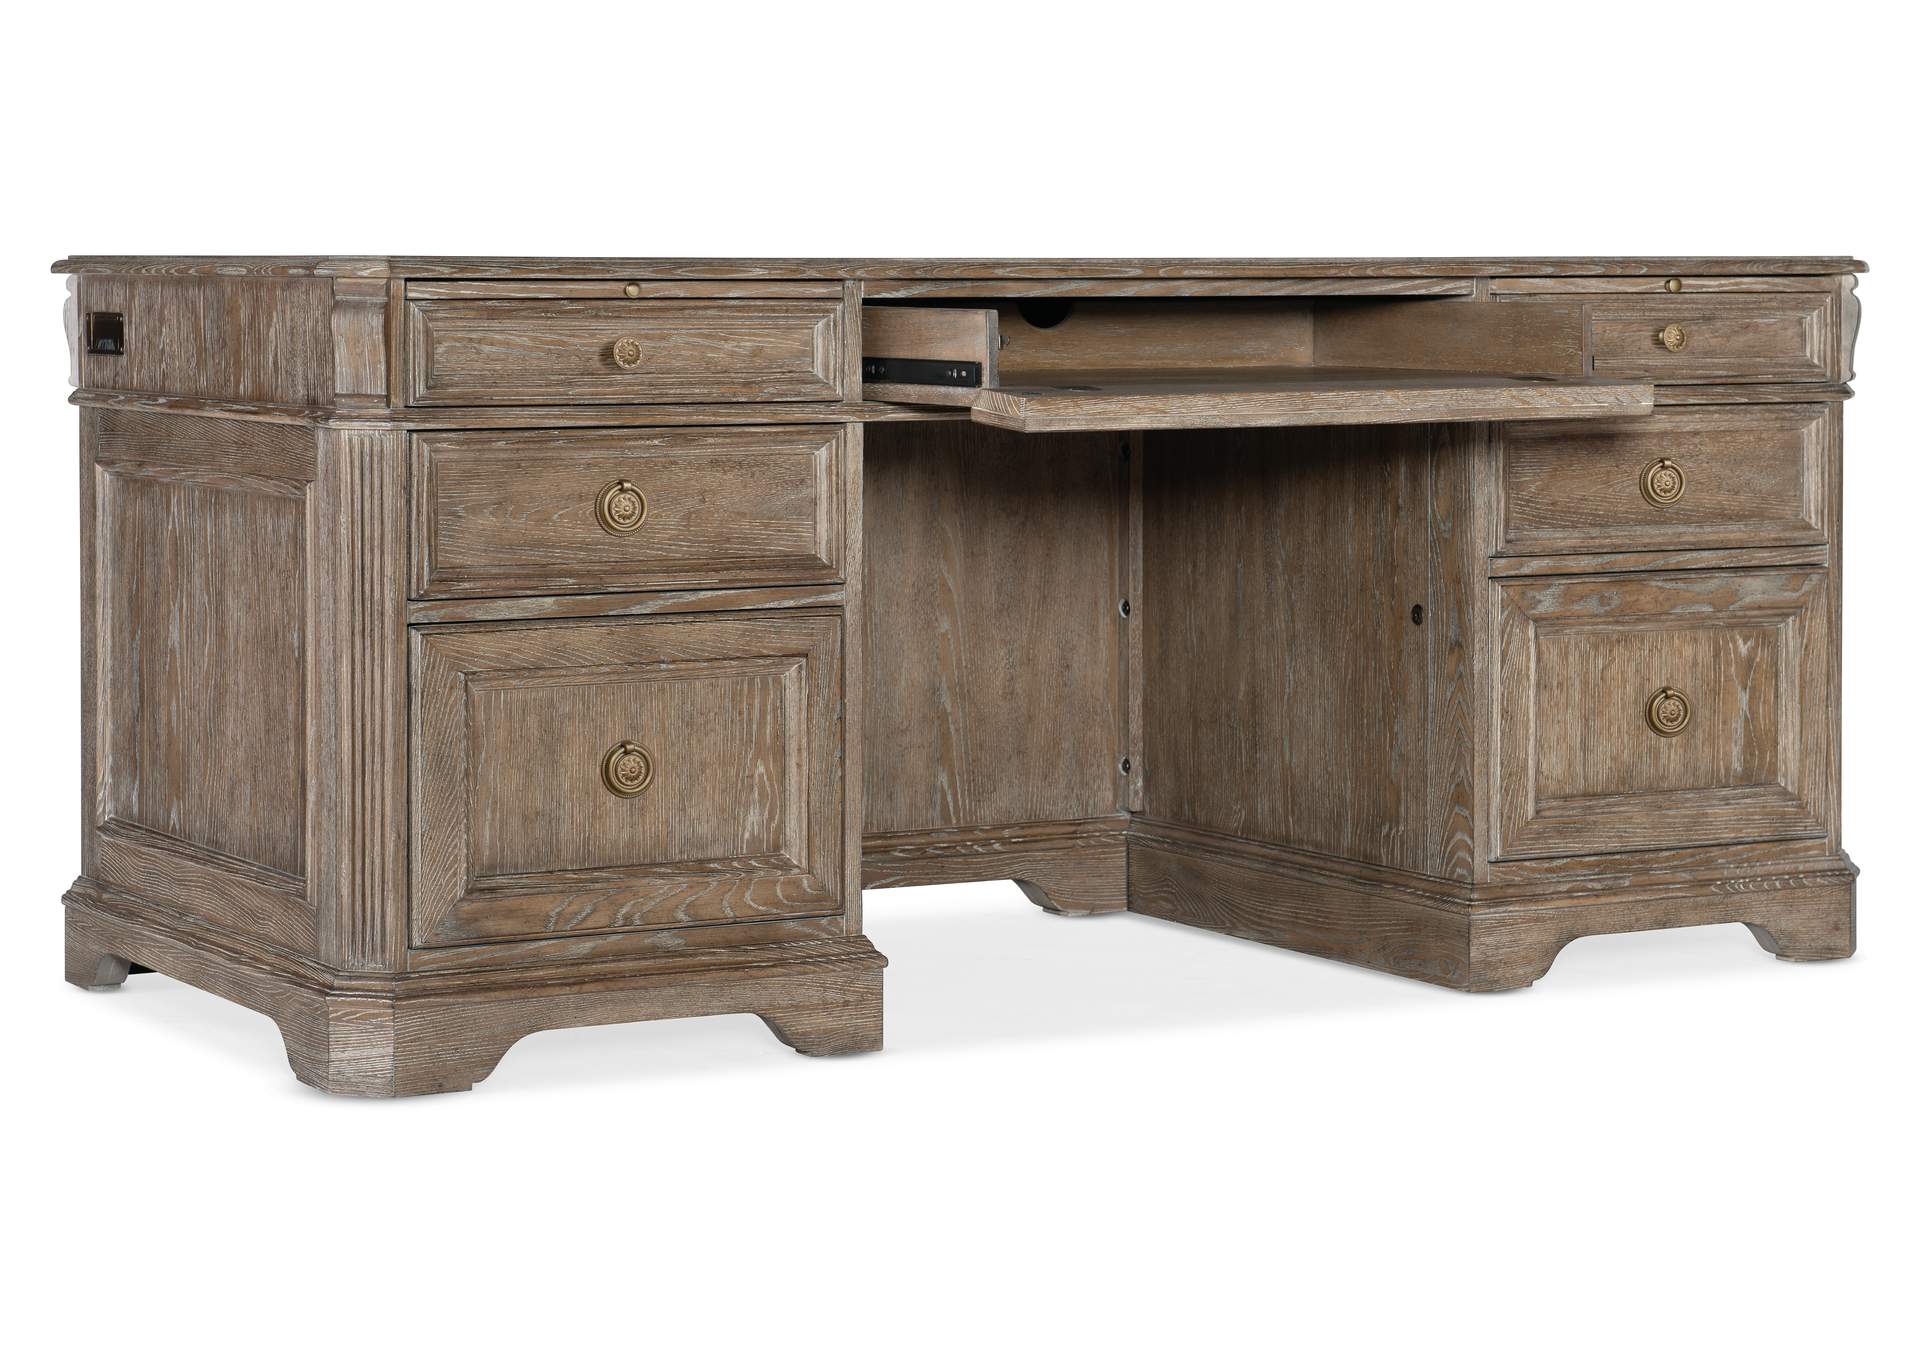 Sutter Executive Desk,Hooker Furniture